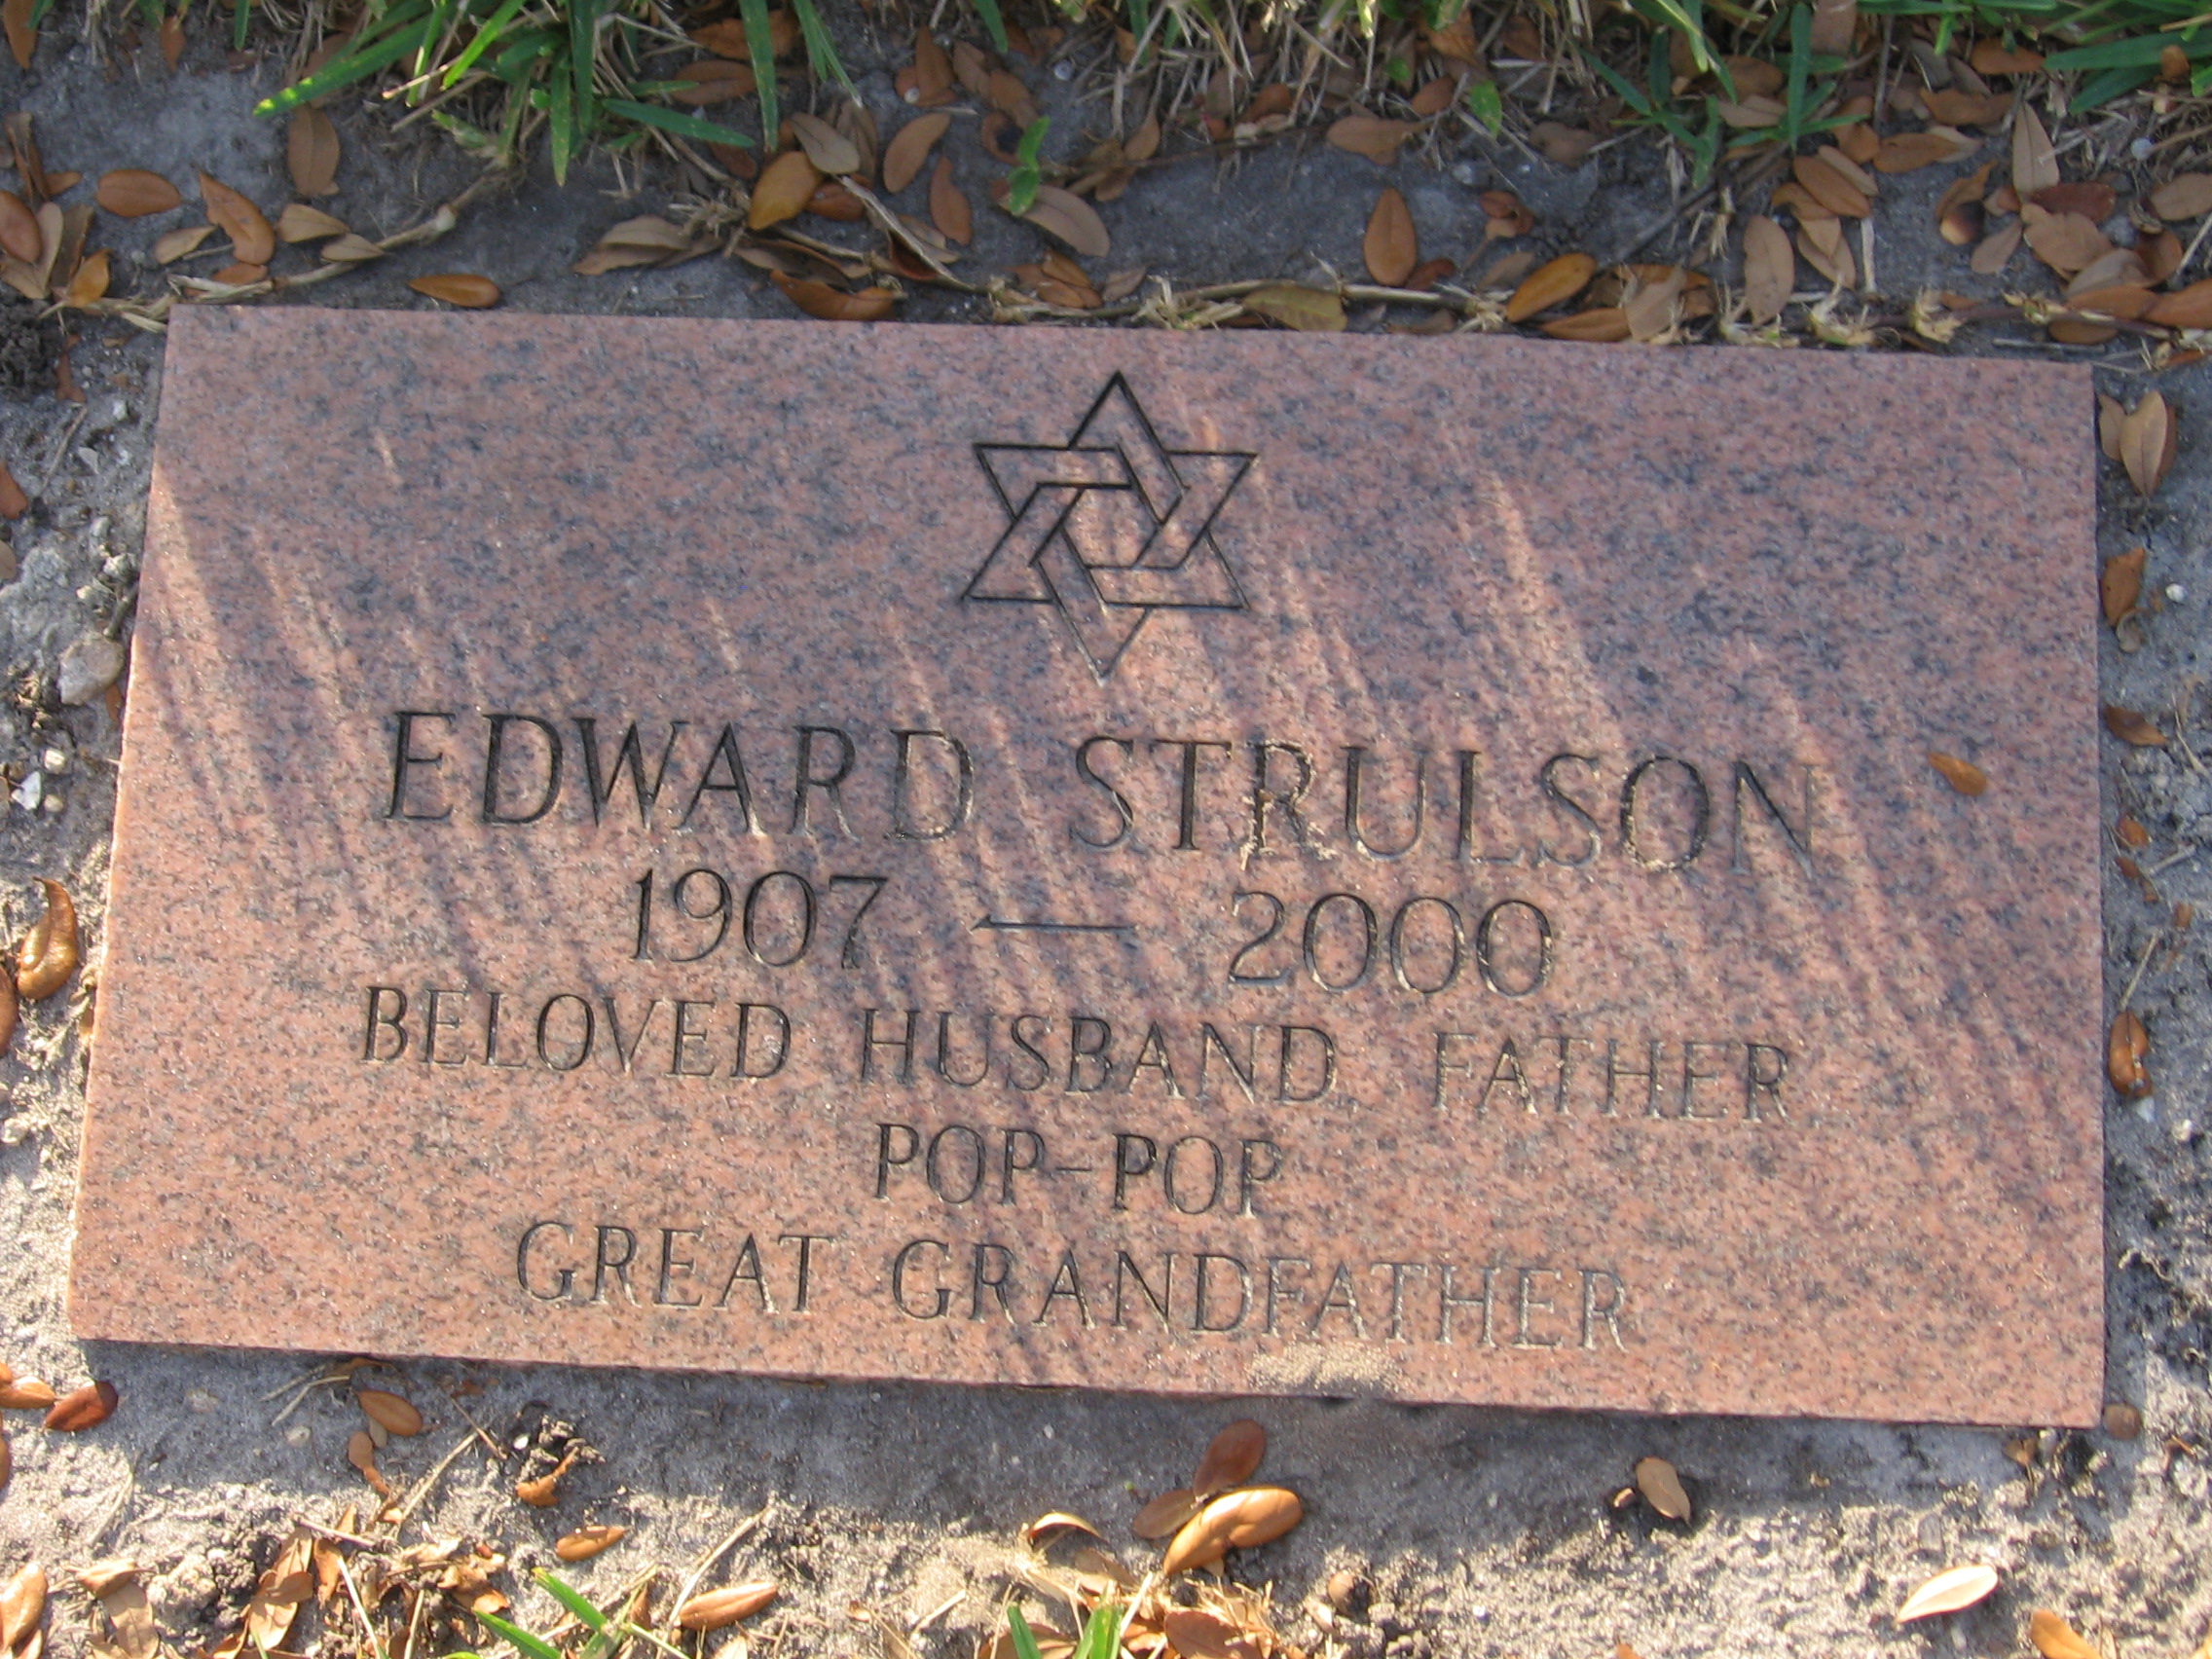 Edward Strulson